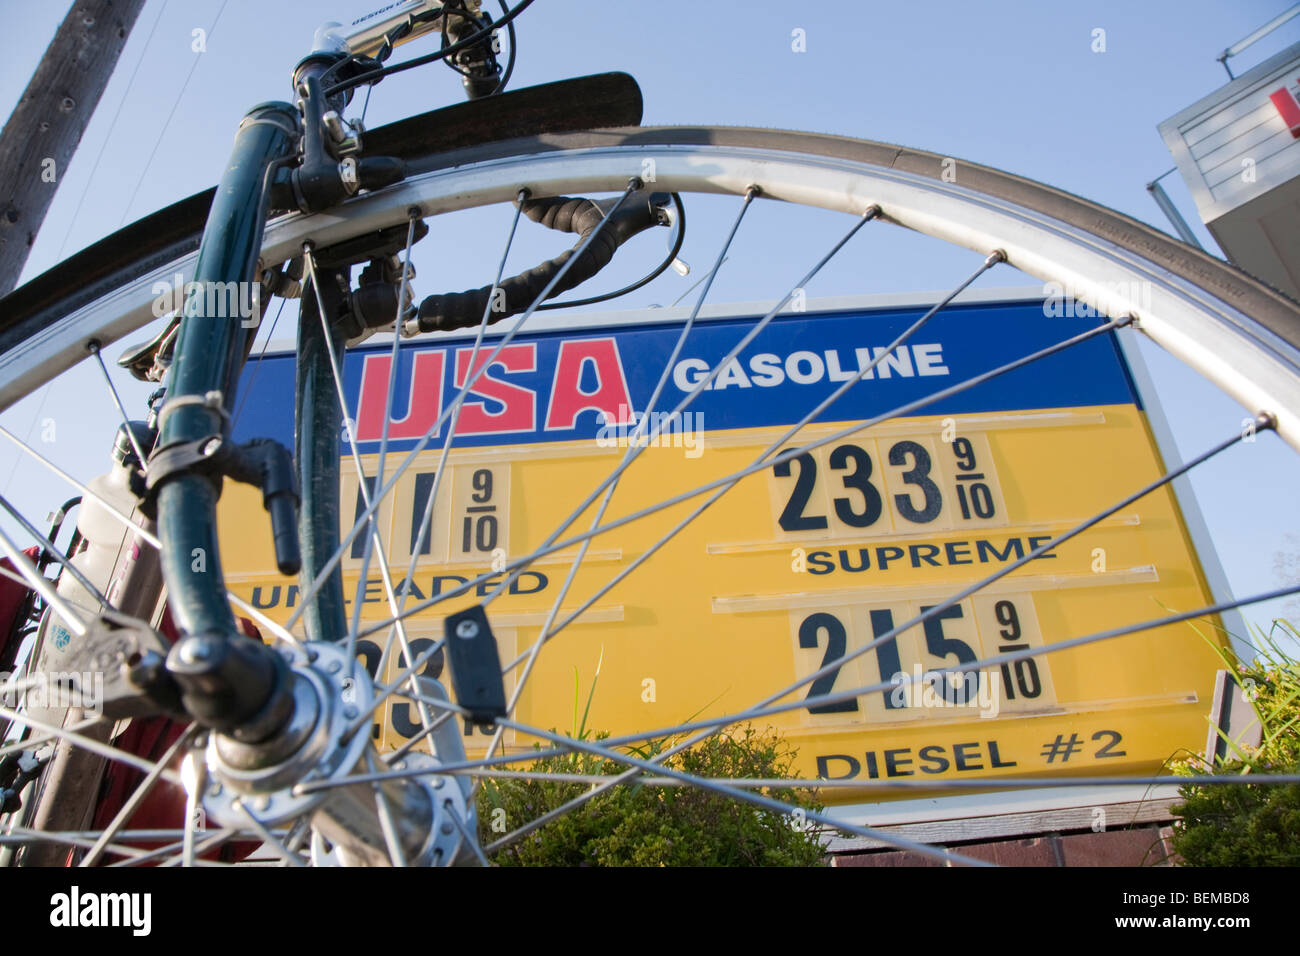 Une liste de prix de l'essence USA vue à travers une roue de bicyclette le 24 mars 2009. Los Altos, Californie, USA Banque D'Images